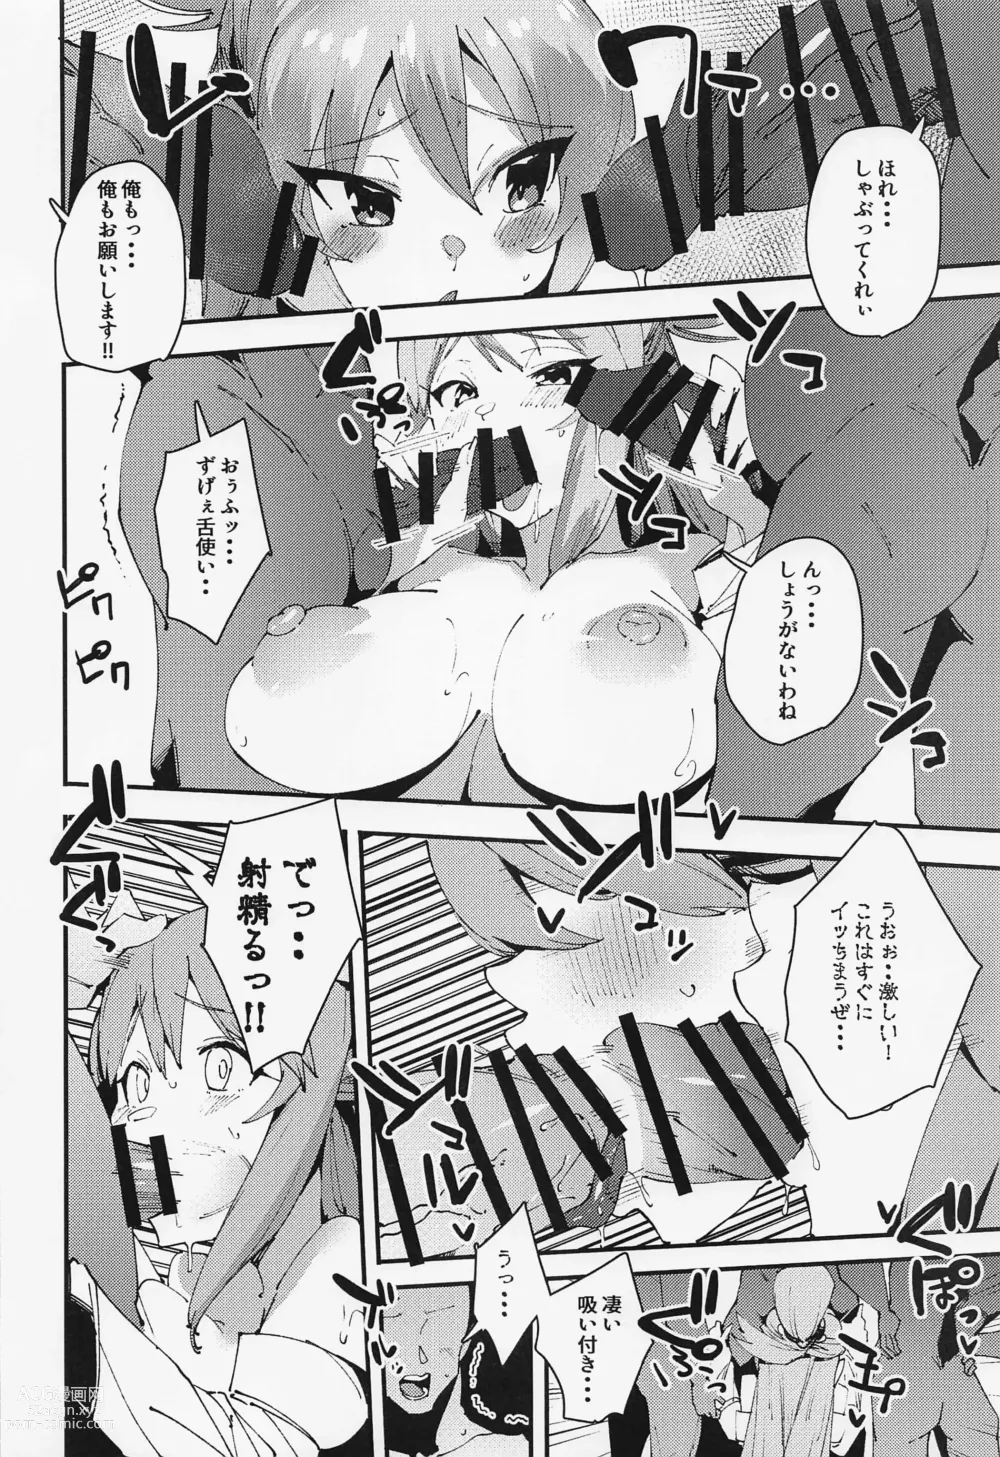 Page 14 of doujinshi Damegami no Tage